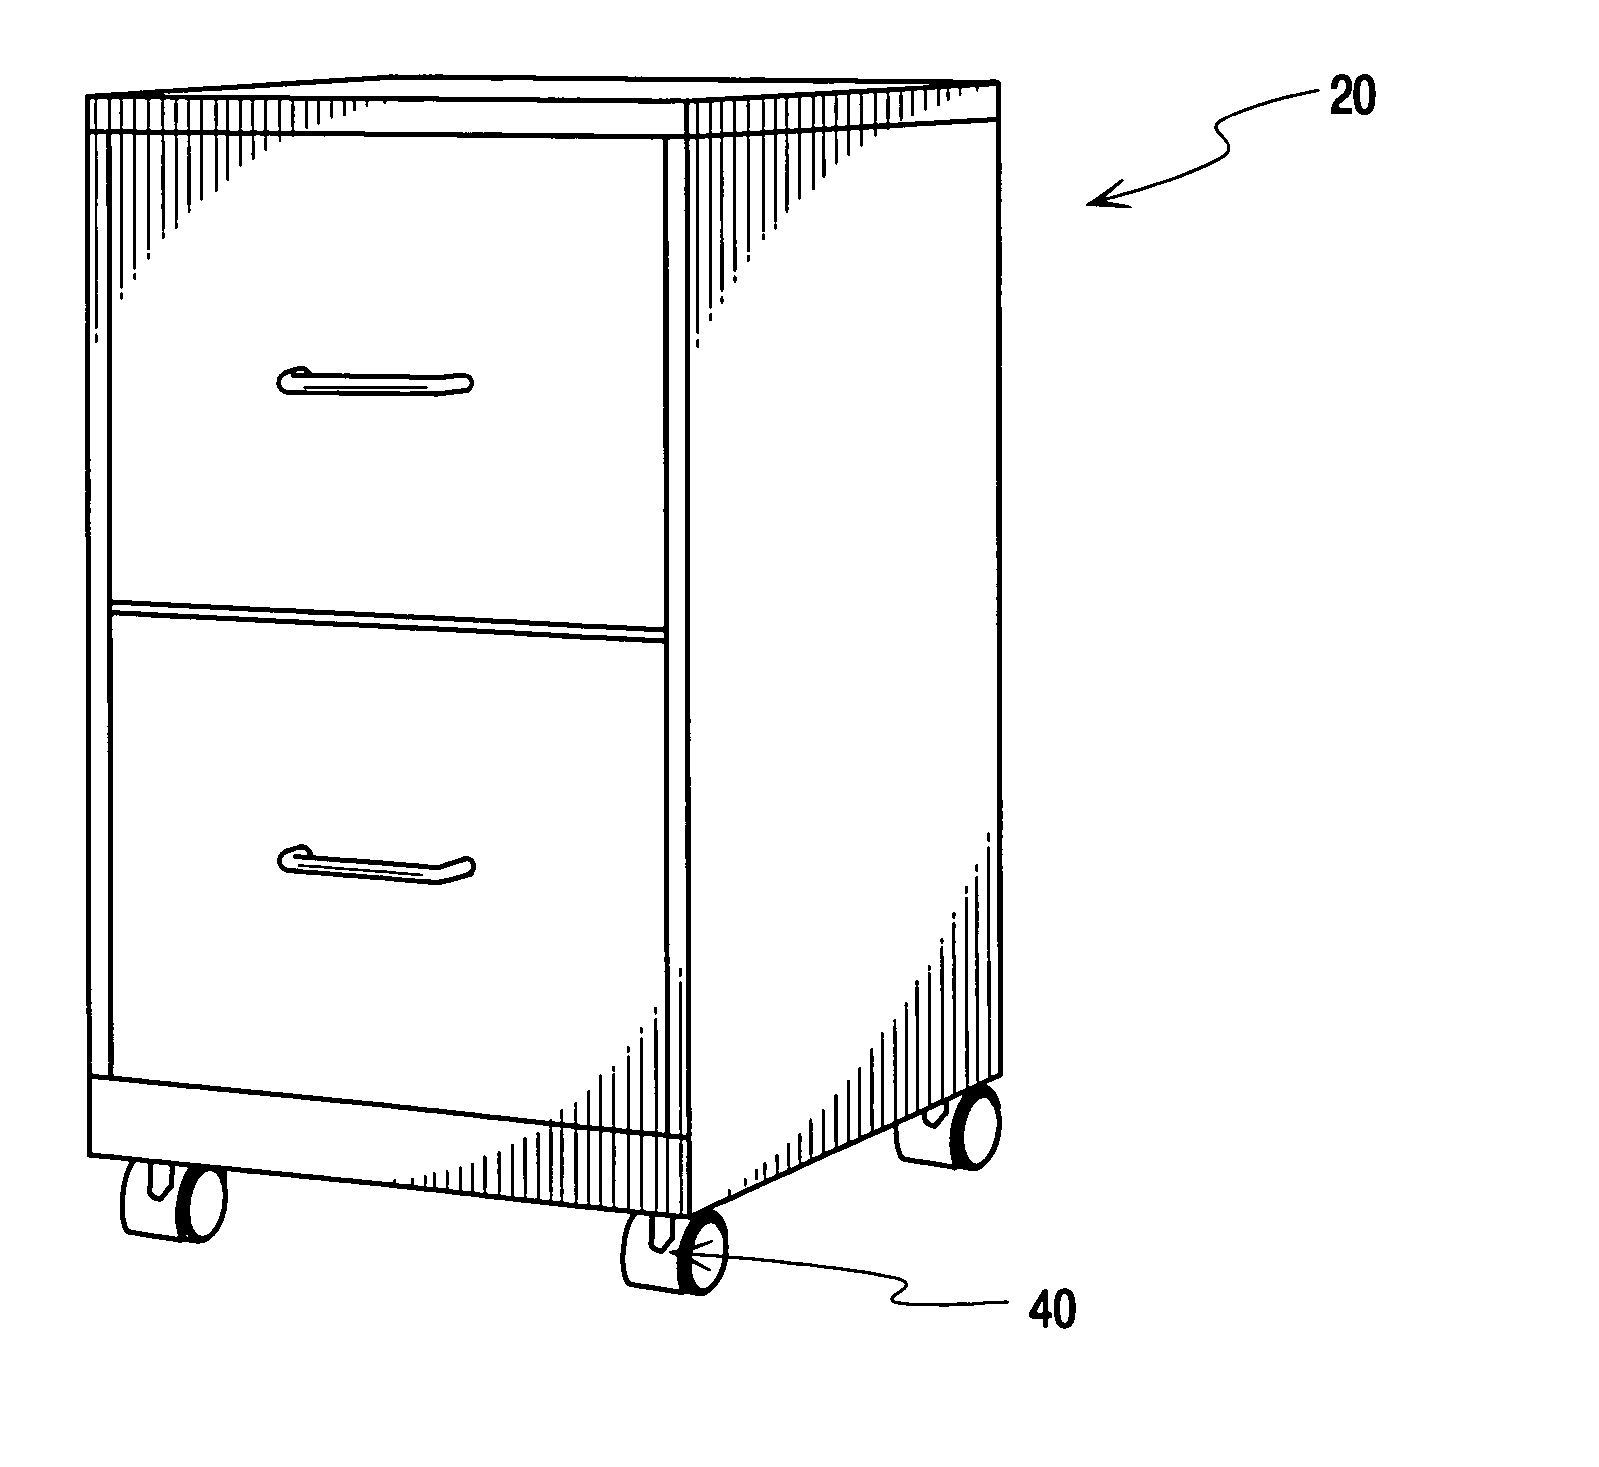 Bracket for open bottom type cabinet